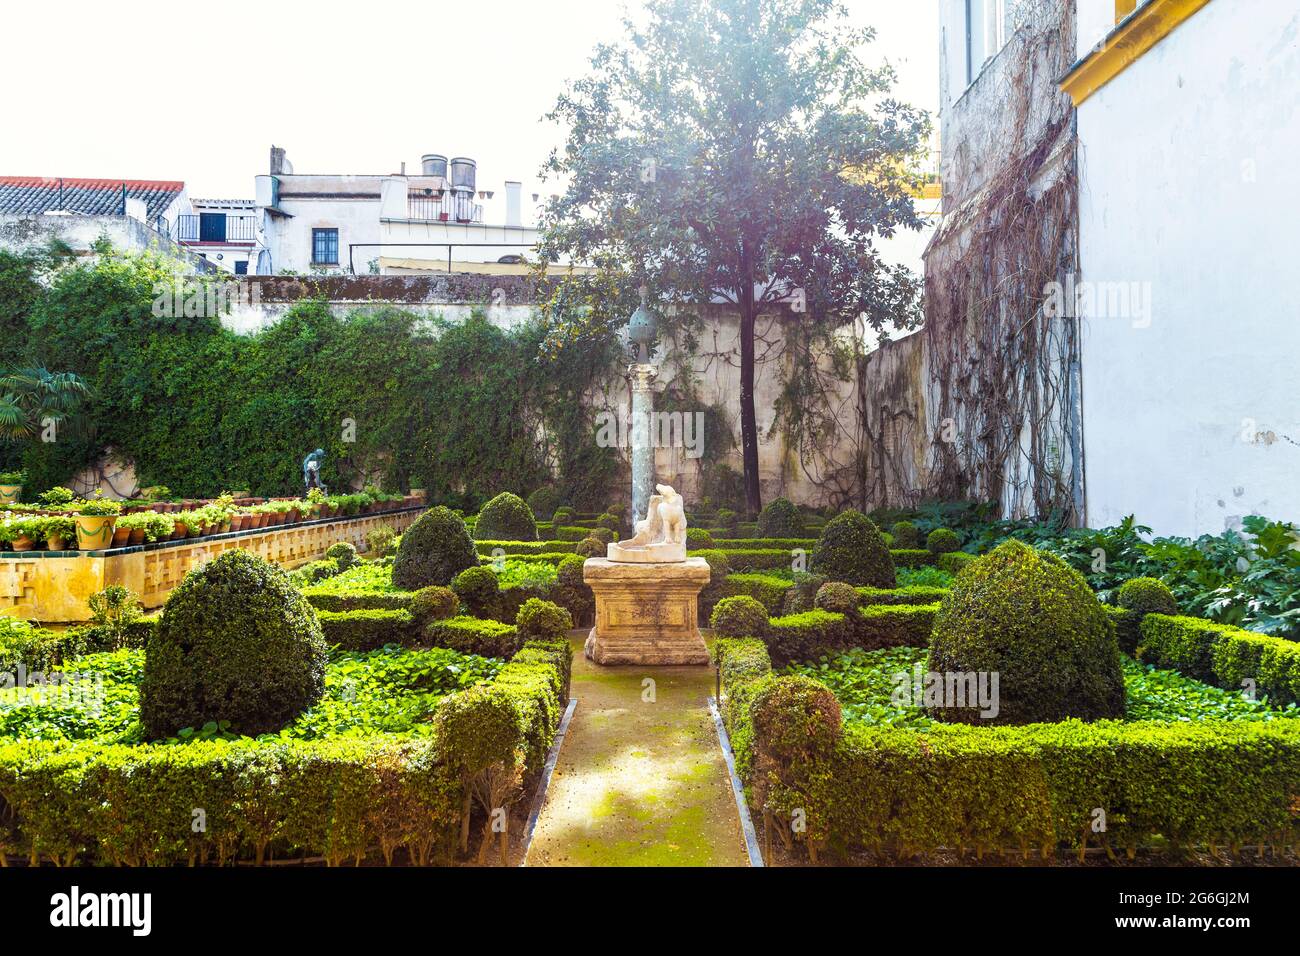 Jardin à la Casa de Pilatos (maison de Pilate), Séville, Andalousie, Espagne Banque D'Images